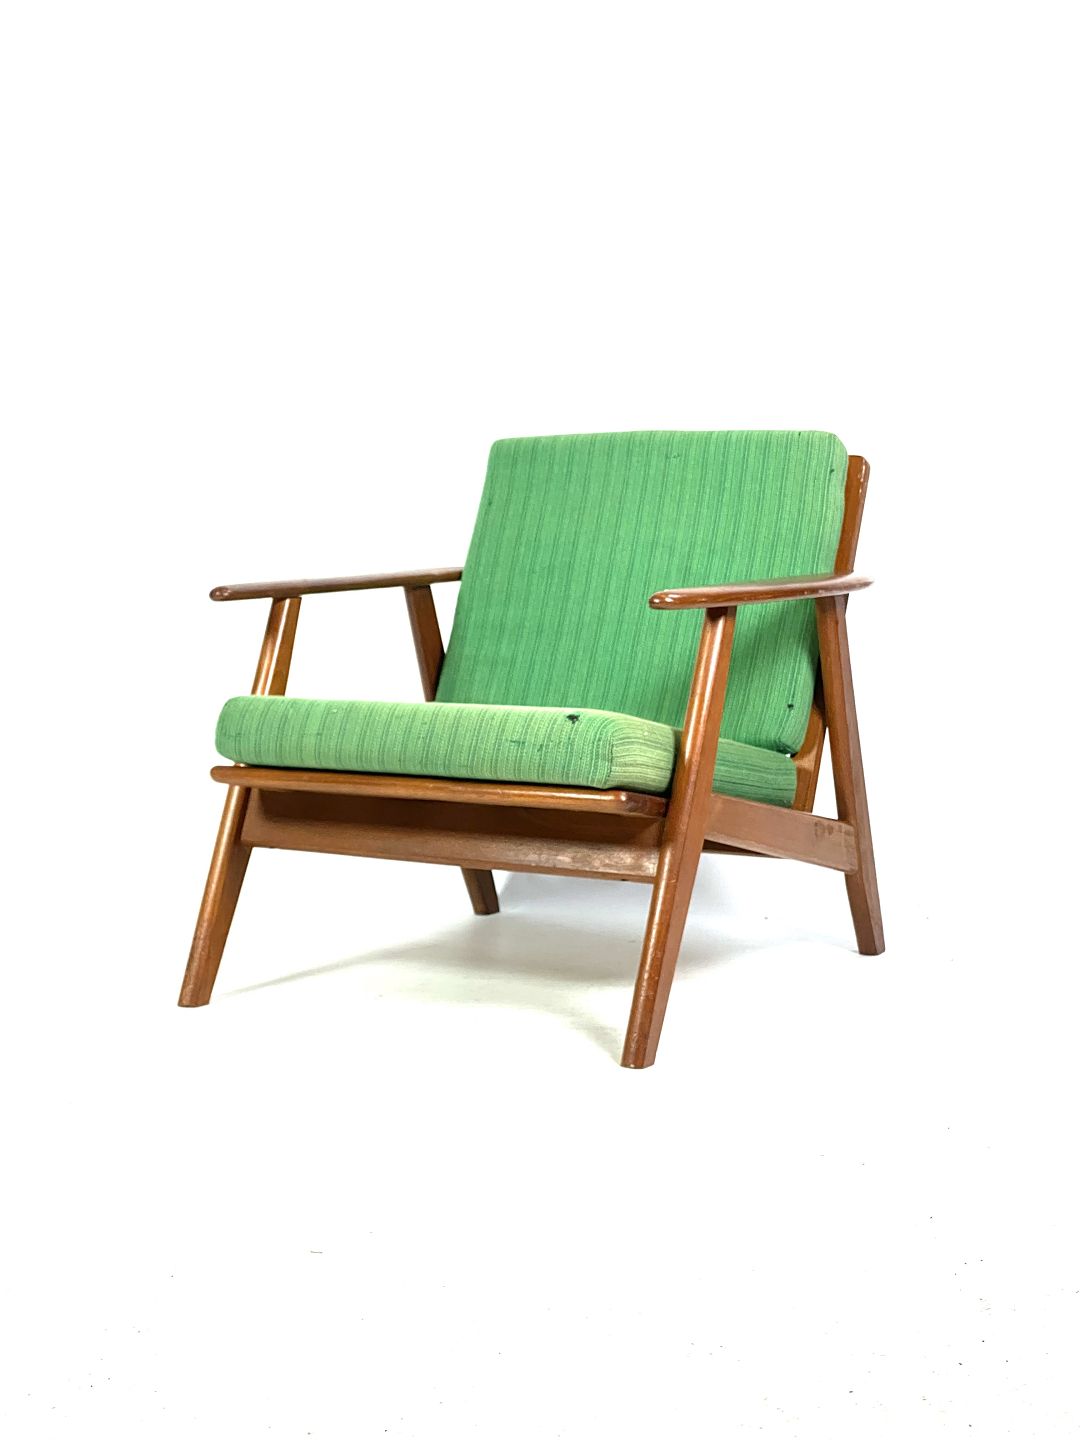 Lænestol i teak og grøn polstring Dansk fra 1960erne. * 5000m2 udstill - Osted Antik & Design